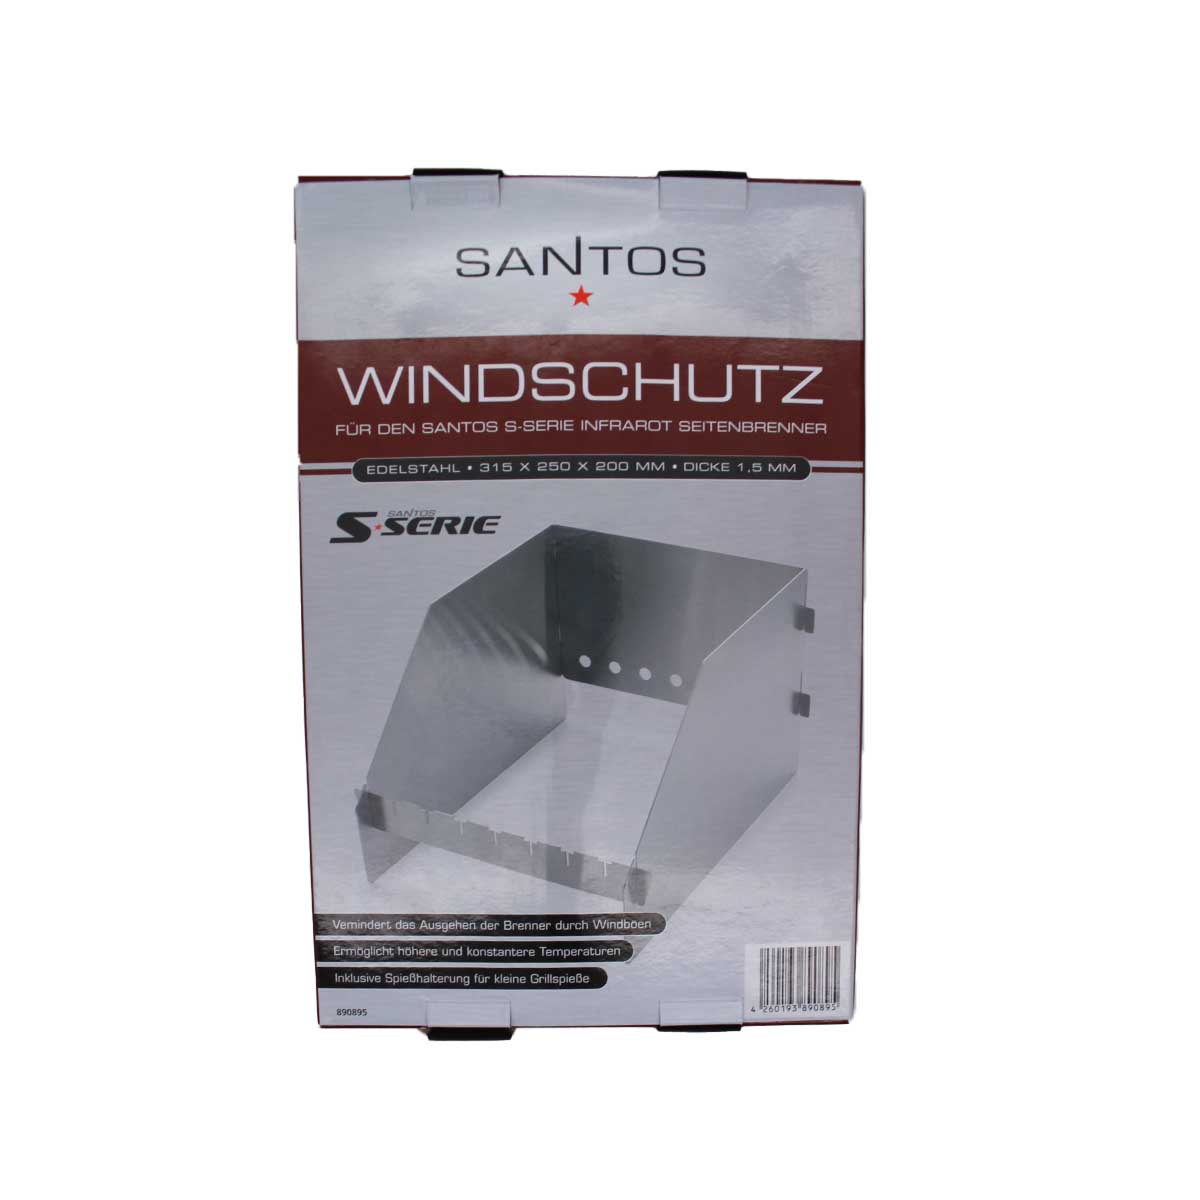 SANTOS Windschild für Seitenbrenner der SANTOS S-Serie & E-Serie, Edelstahl